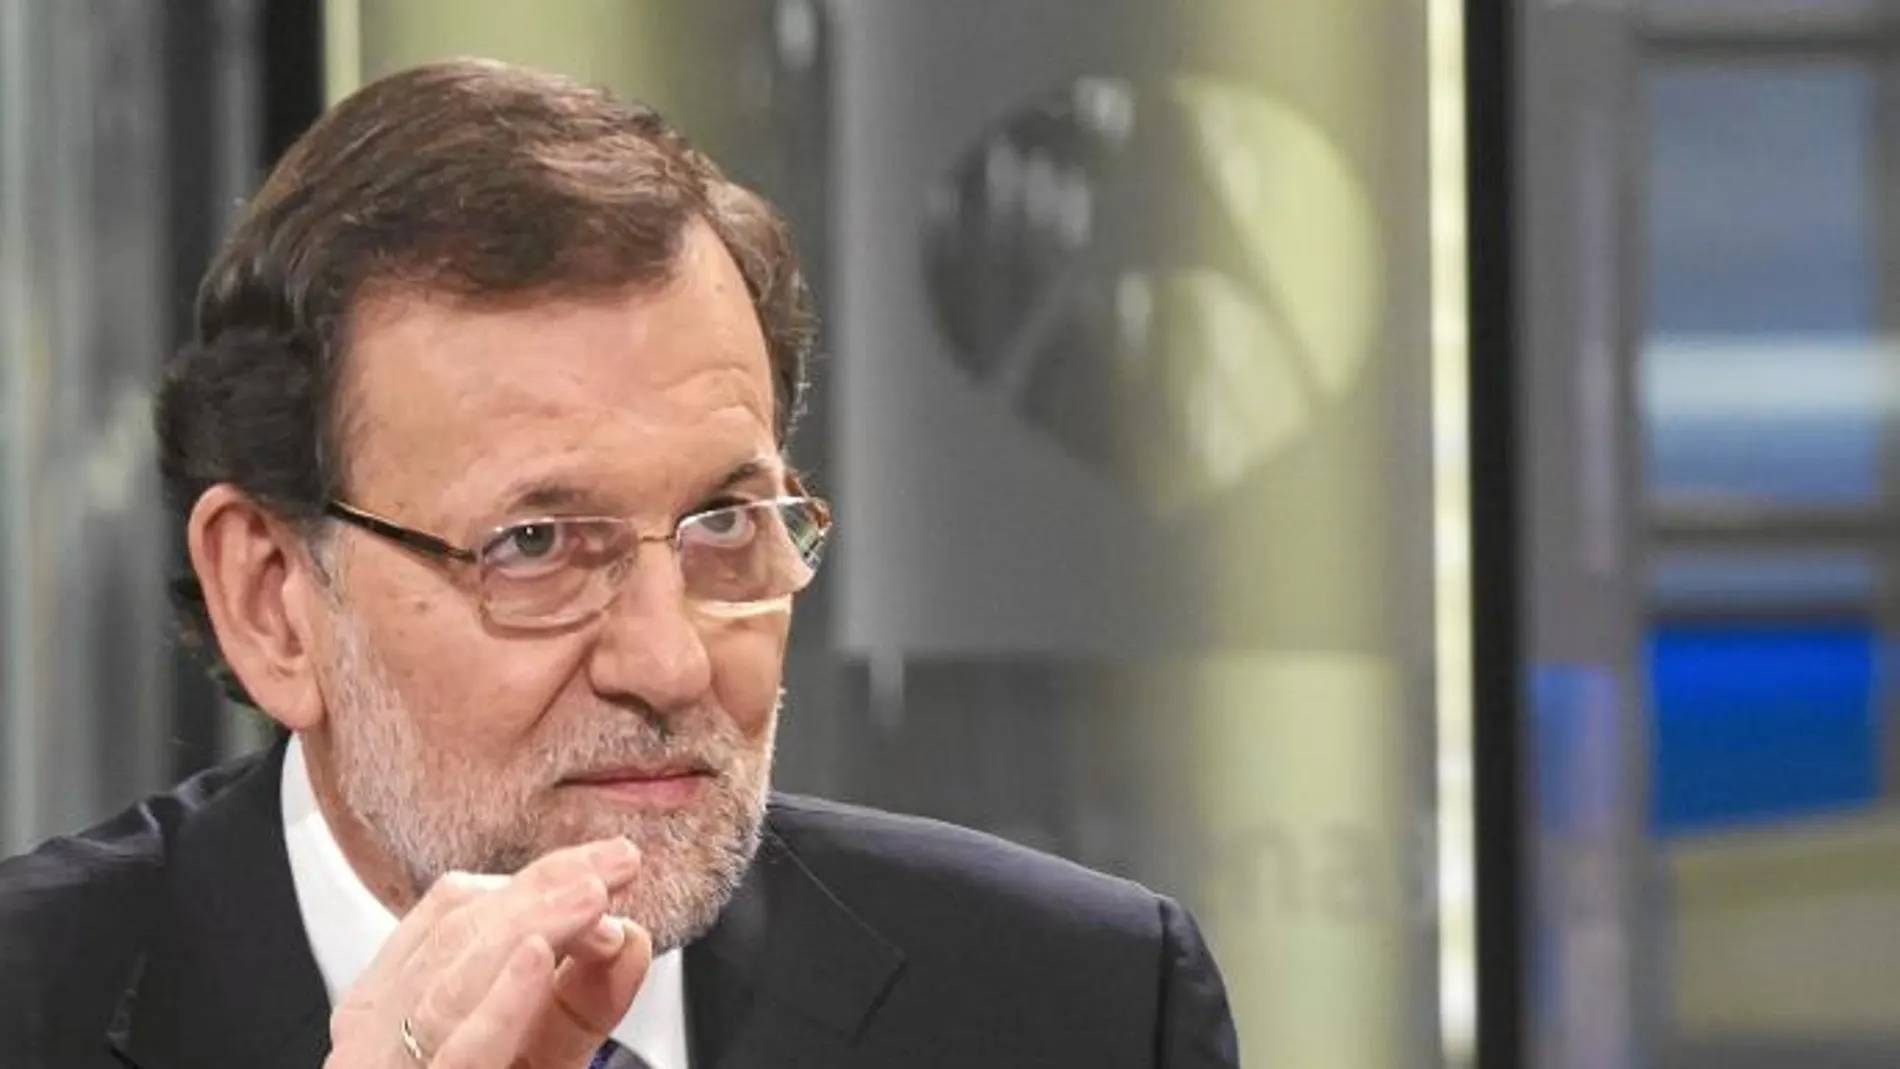 El presidente del Gobierno, Mariano Rajoy, durante un momento de la entrevista con Gloria Lomana, directora de Informativos de Antena 3